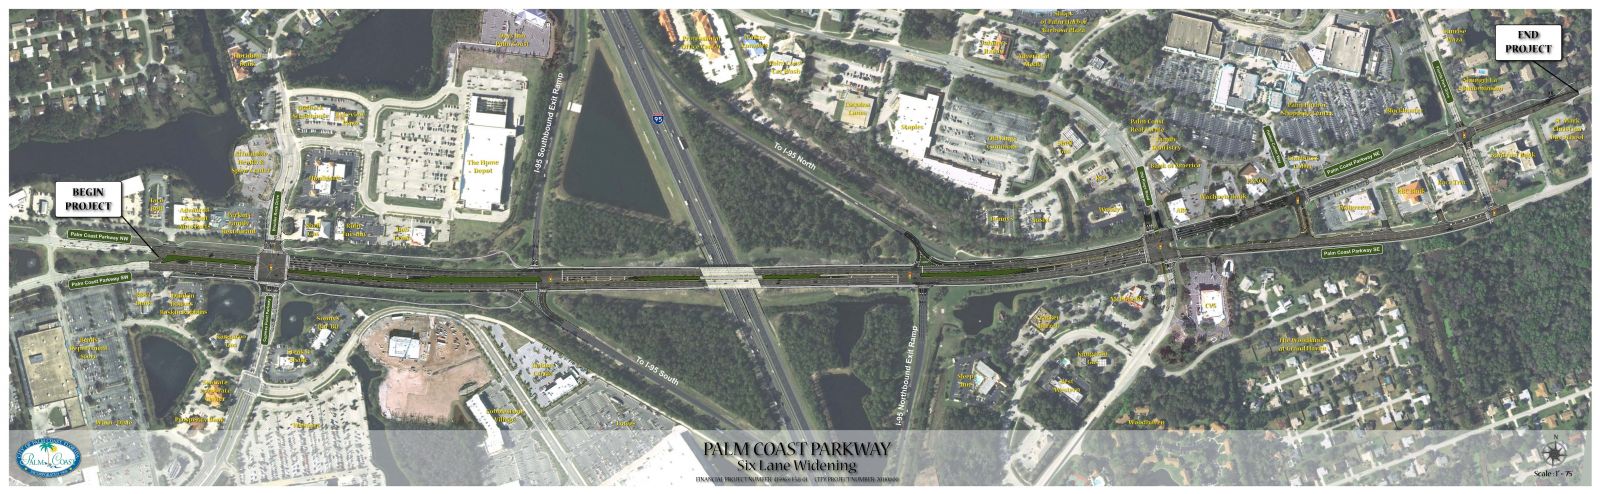 Palm Coast Pkwy widening to six lanes 2015